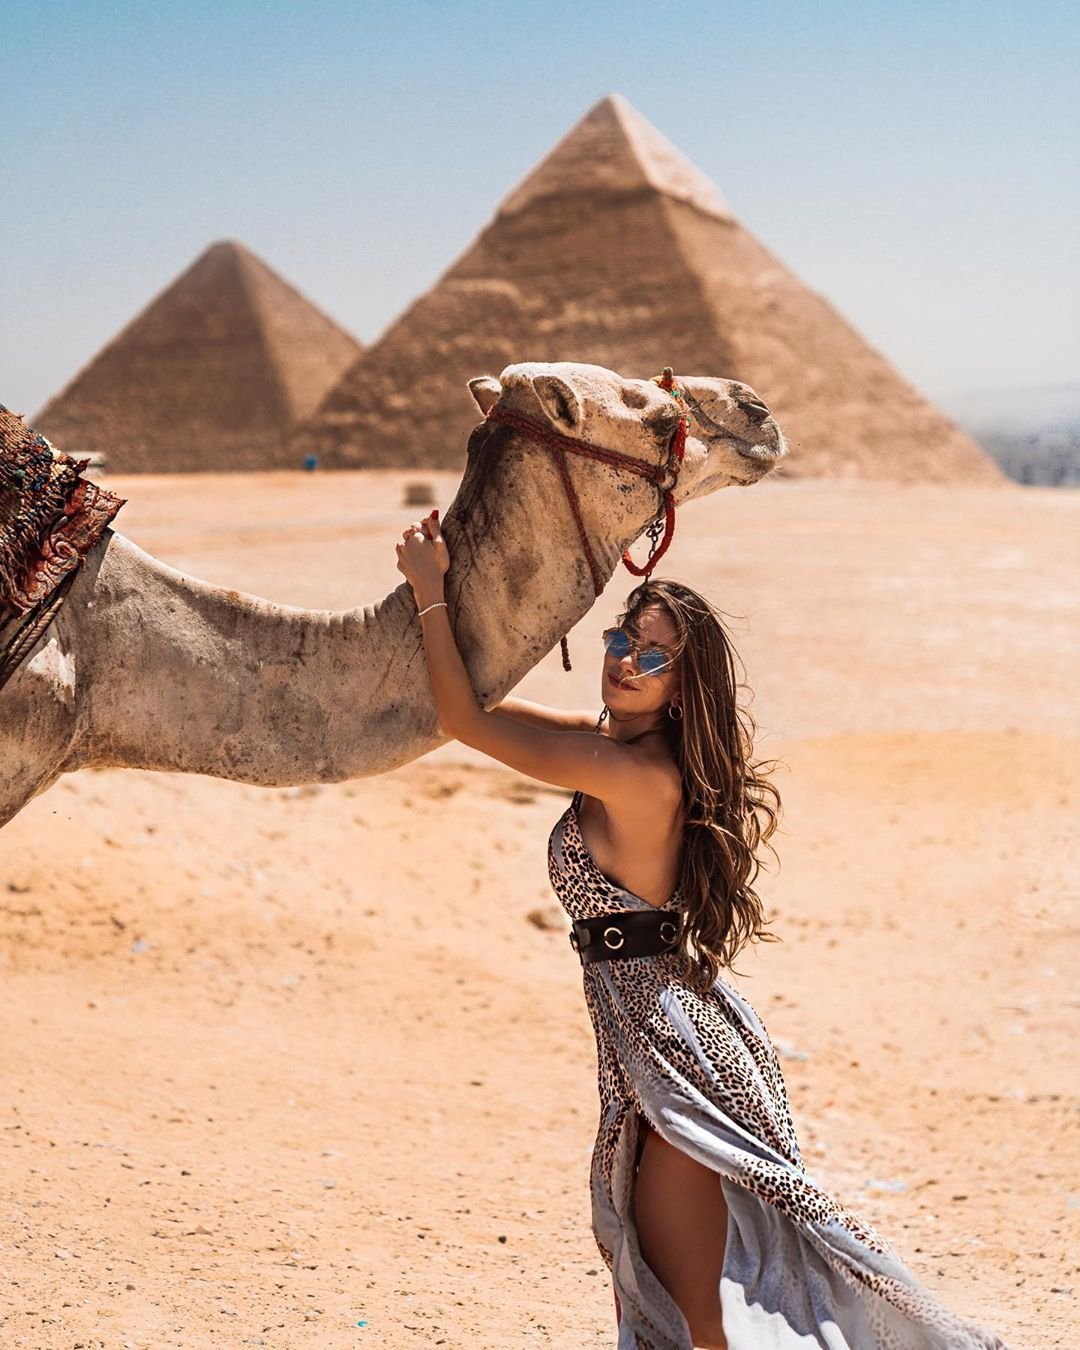 египет туры фото